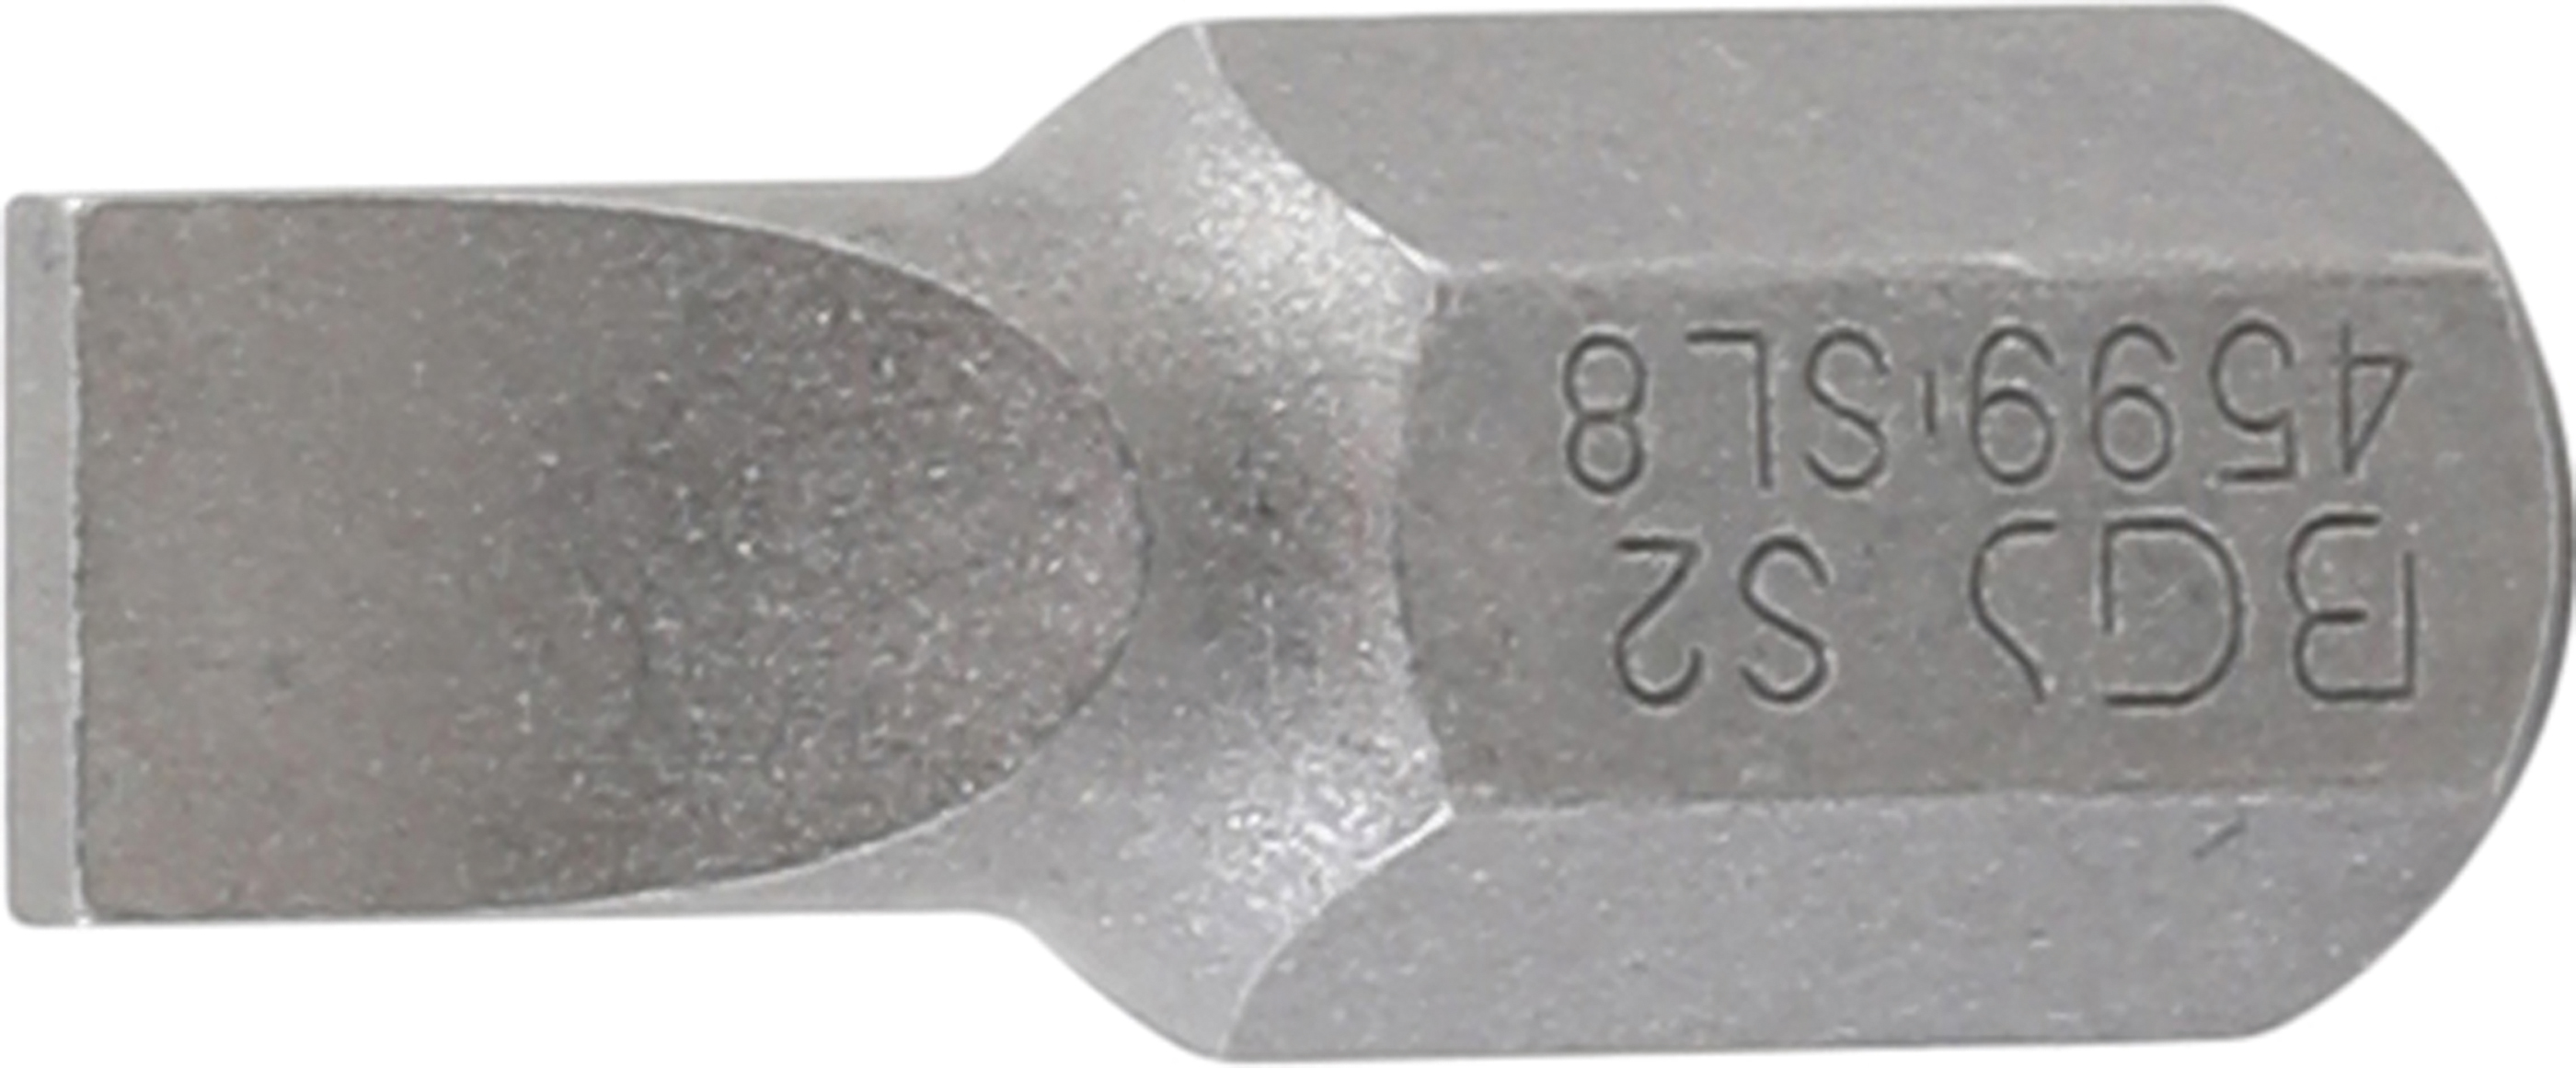 BGS 4599 Bit cu canelura 8 mm, lungime 30 mm, antrenare 10 mm (3/8")